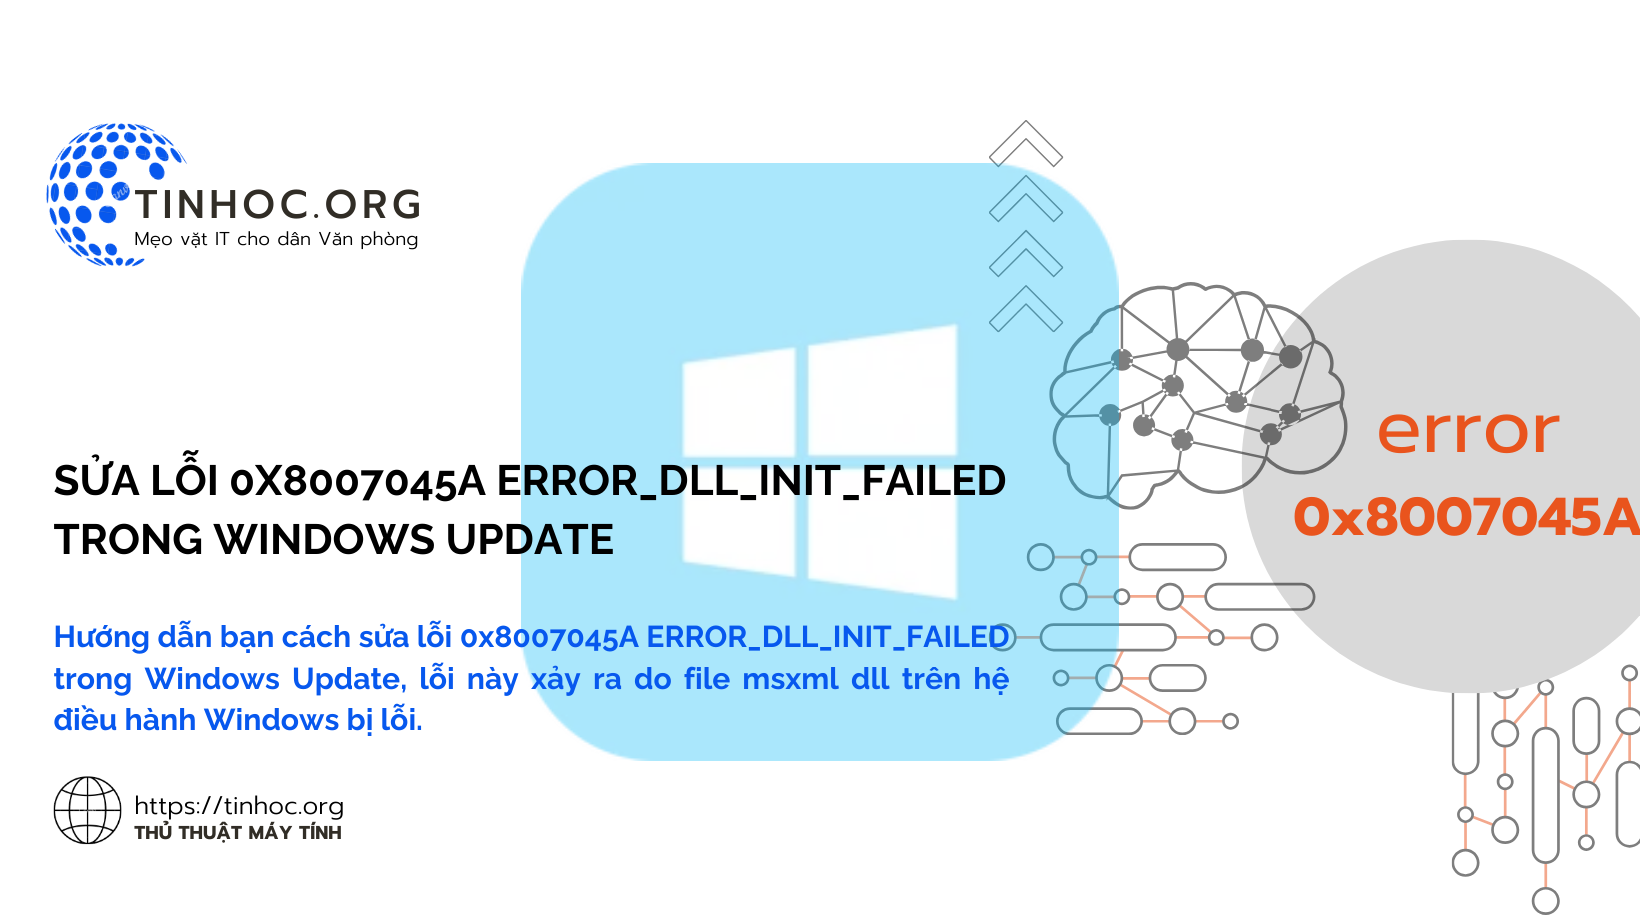 Hướng dẫn bạn cách sửa lỗi 0x8007045A ERROR_DLL_INIT_FAILED trong Windows Update, lỗi này xảy ra do file msxml dll trên hệ điều hành Windows bị lỗi.